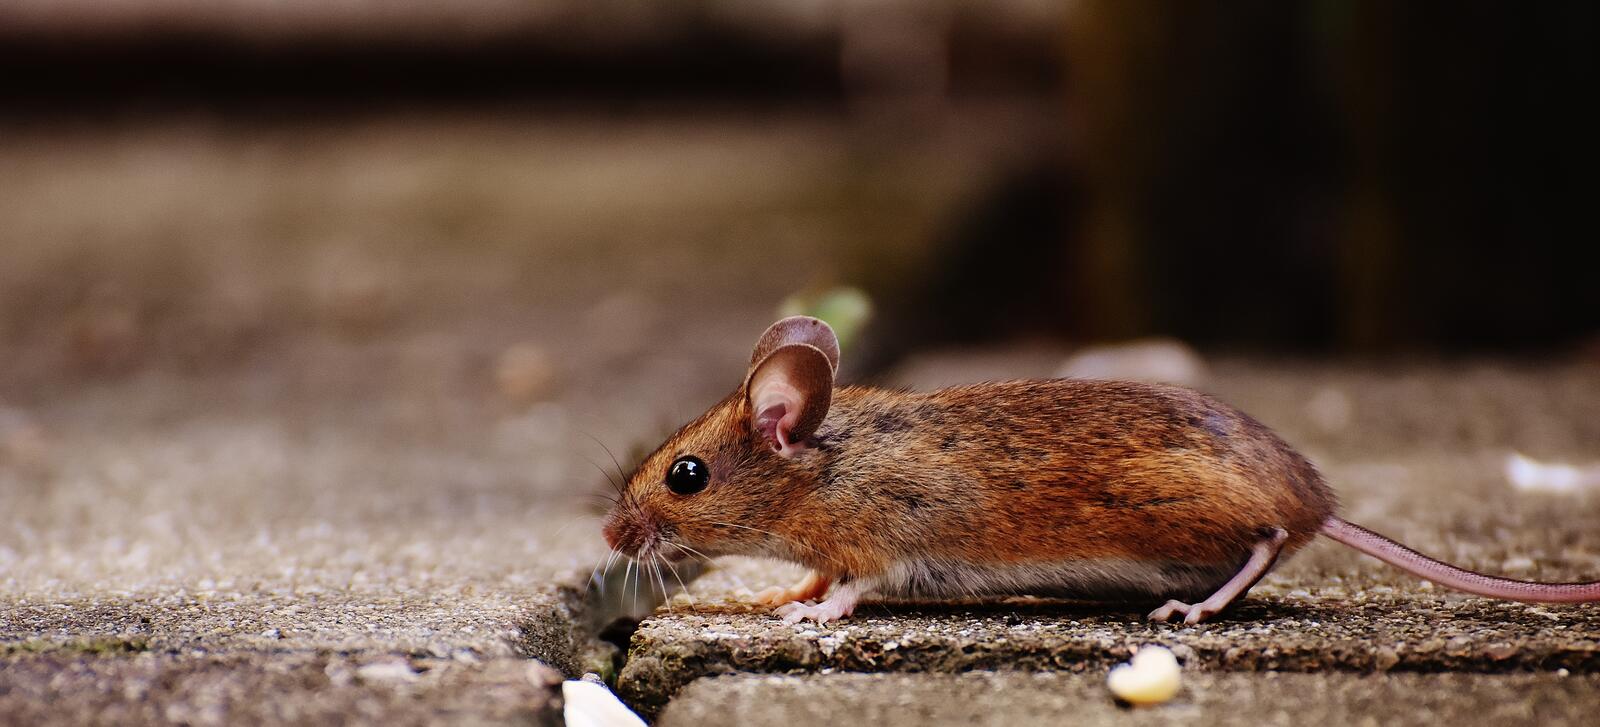 Бесплатное фото Городская мышка